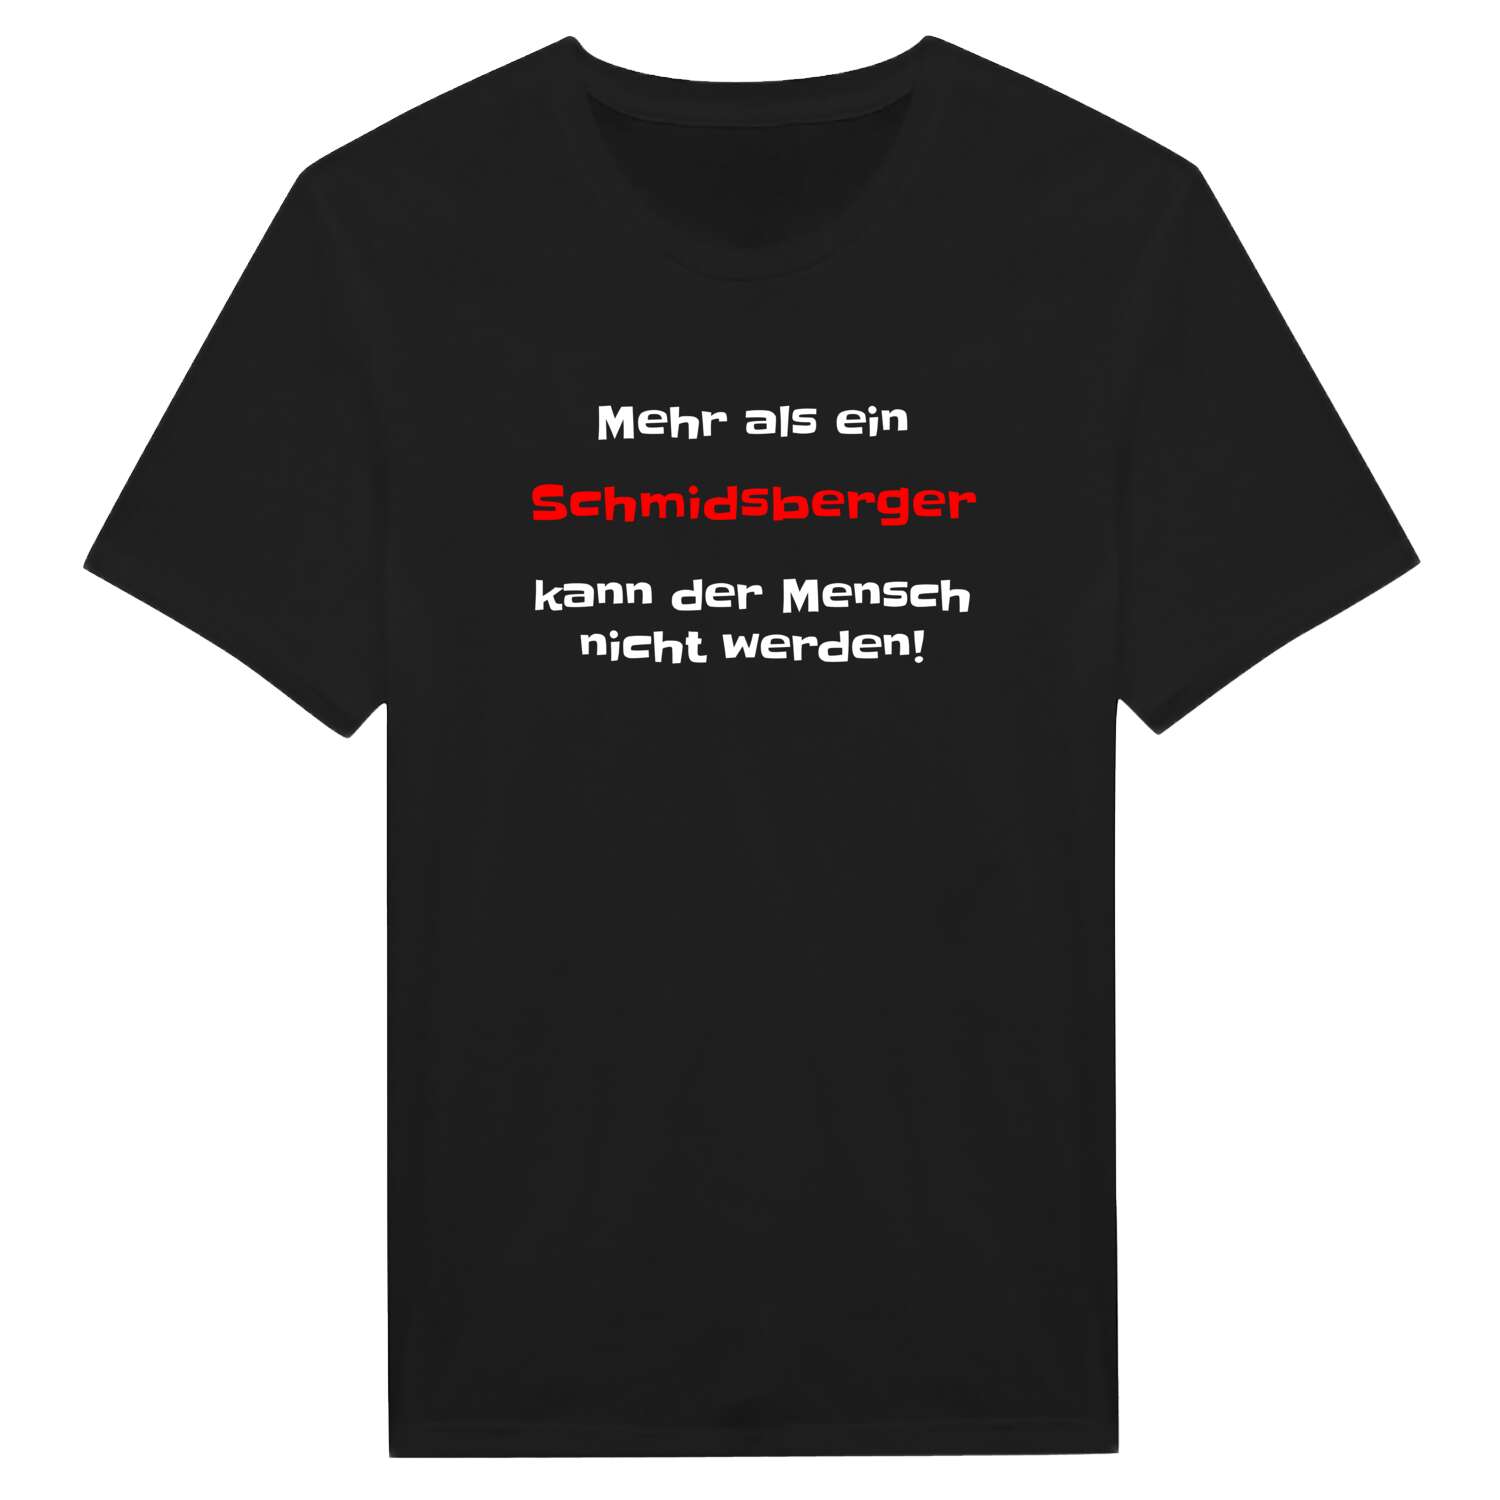 Schmidsberg T-Shirt »Mehr als ein«